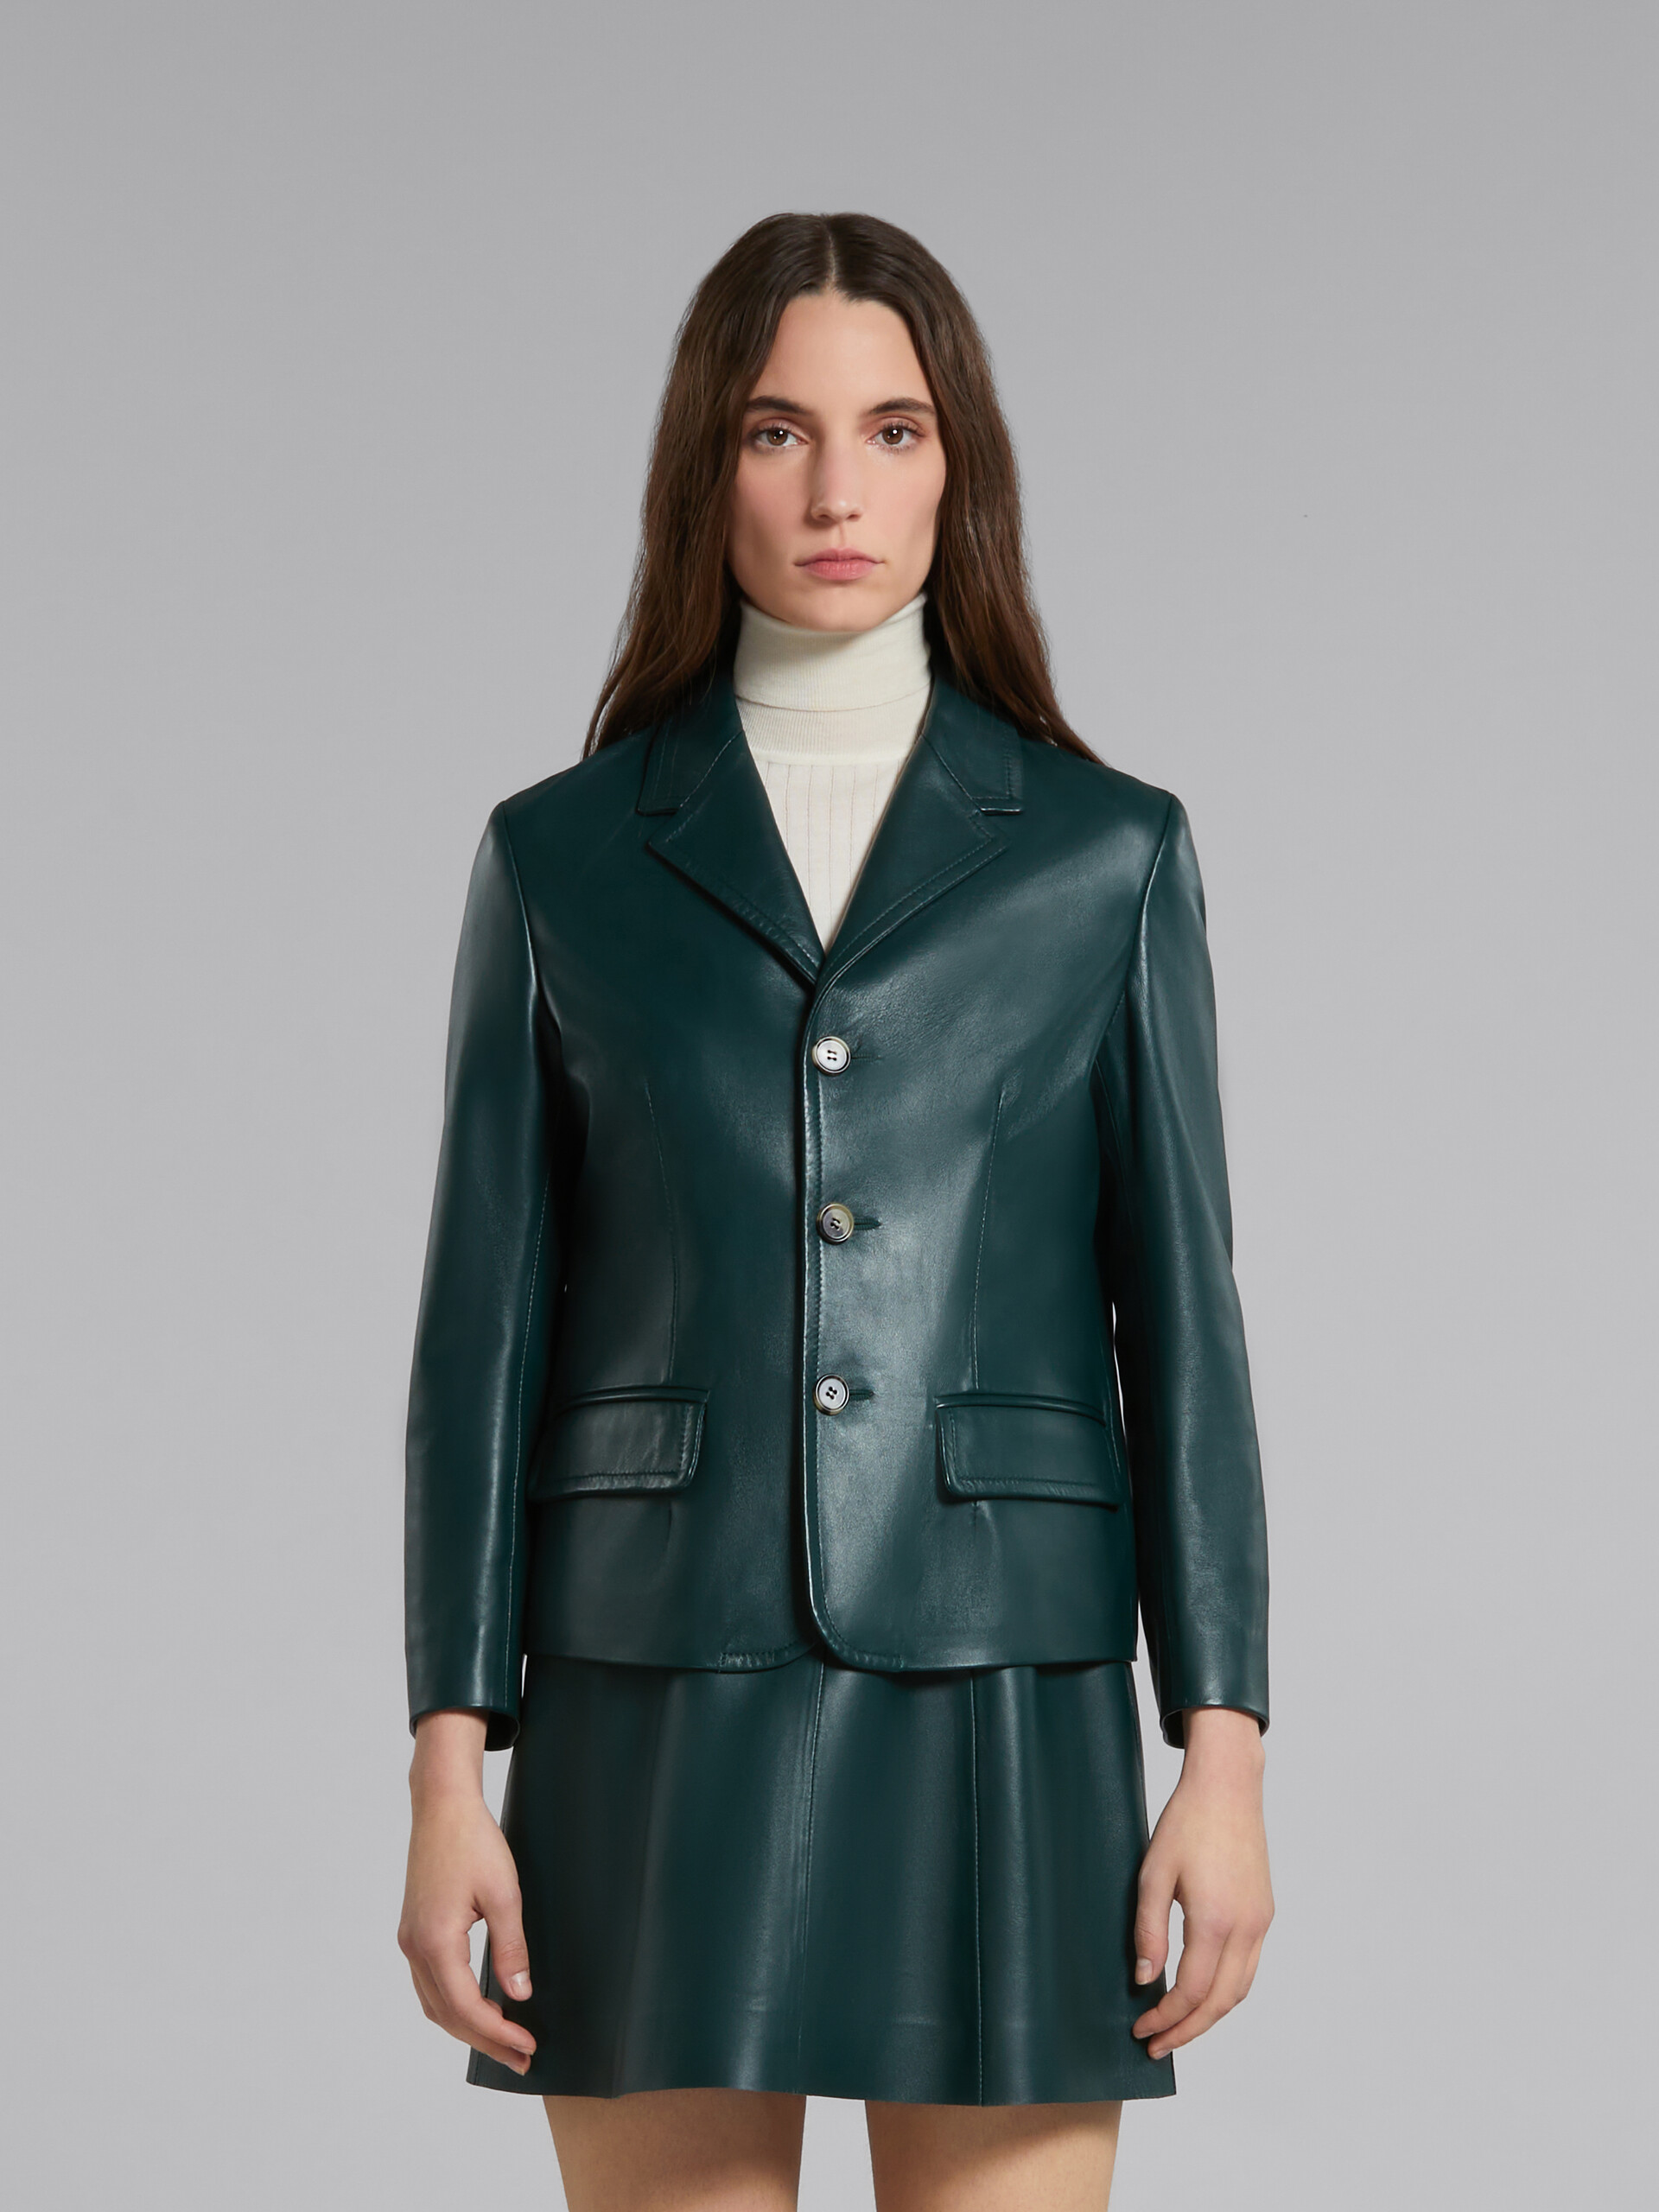 Green leather jacket - Jackets - Image 2